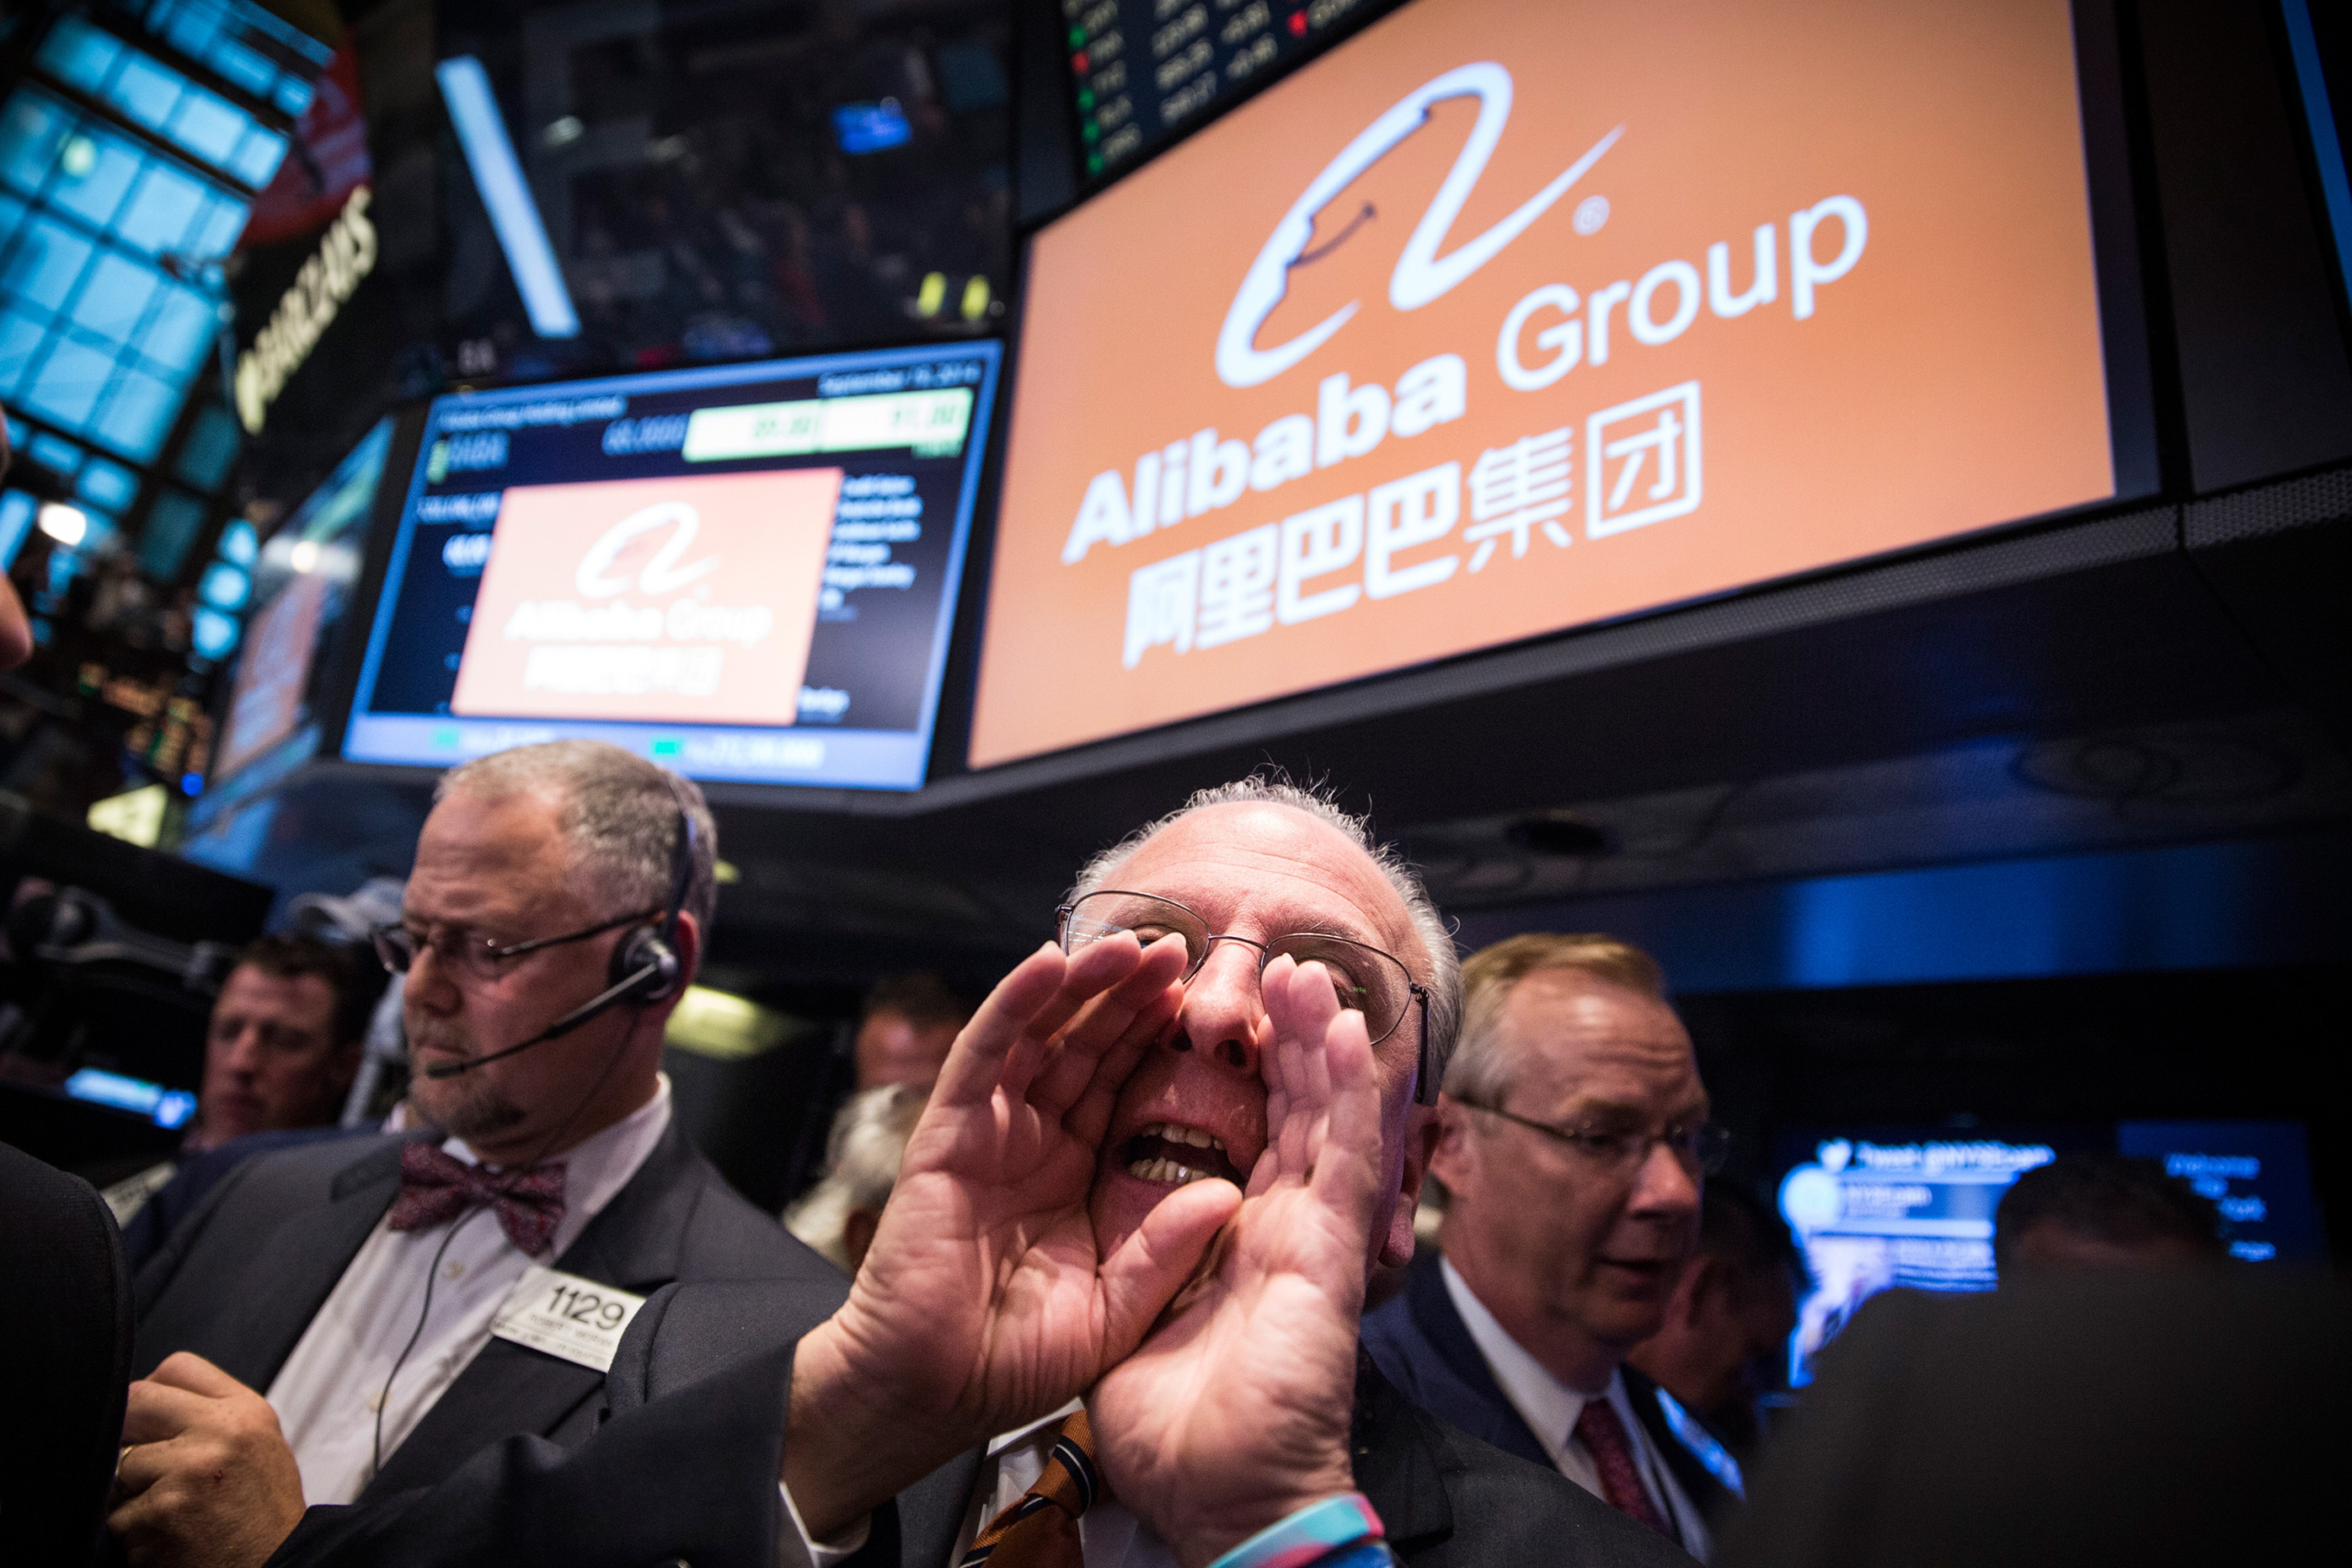 Các nhà giao dịch làm việc trên sàn của Sở Giao dịch Chứng khoán New York trong lúc giá chào bán lần đầu (IPO) của Tập đoàn Alibaba được quyết định, tại thành phố New York, hôm 19/09/2014. (Ảnh: Andrew Burton/Getty Images)